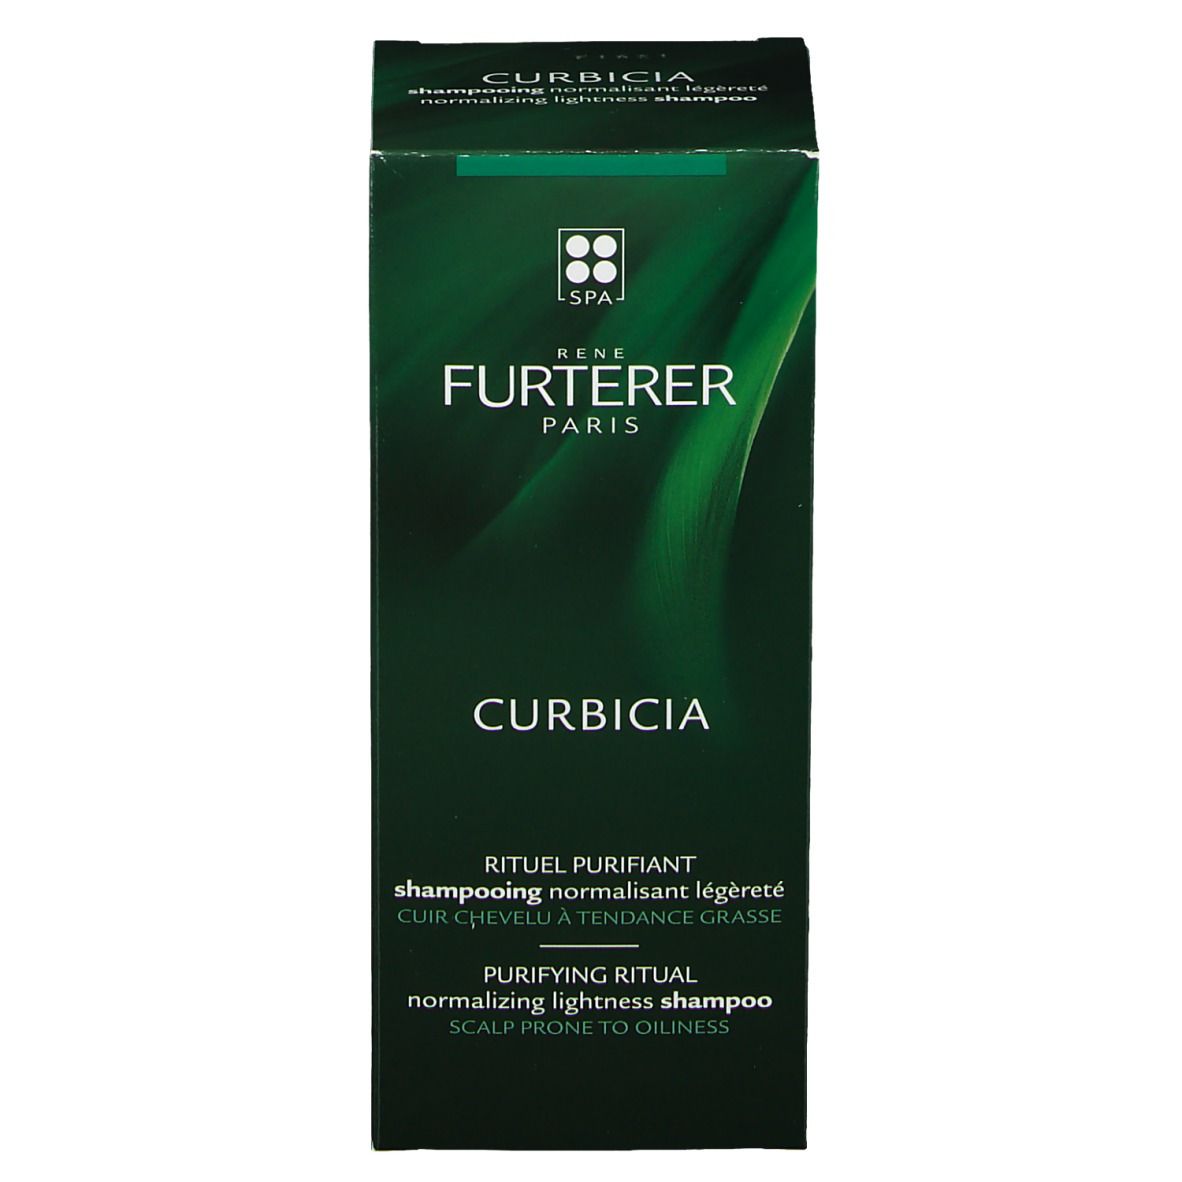 RENE FURTERER CURBICIA Regulierendes Shampoo für luftig-leichtes Haar